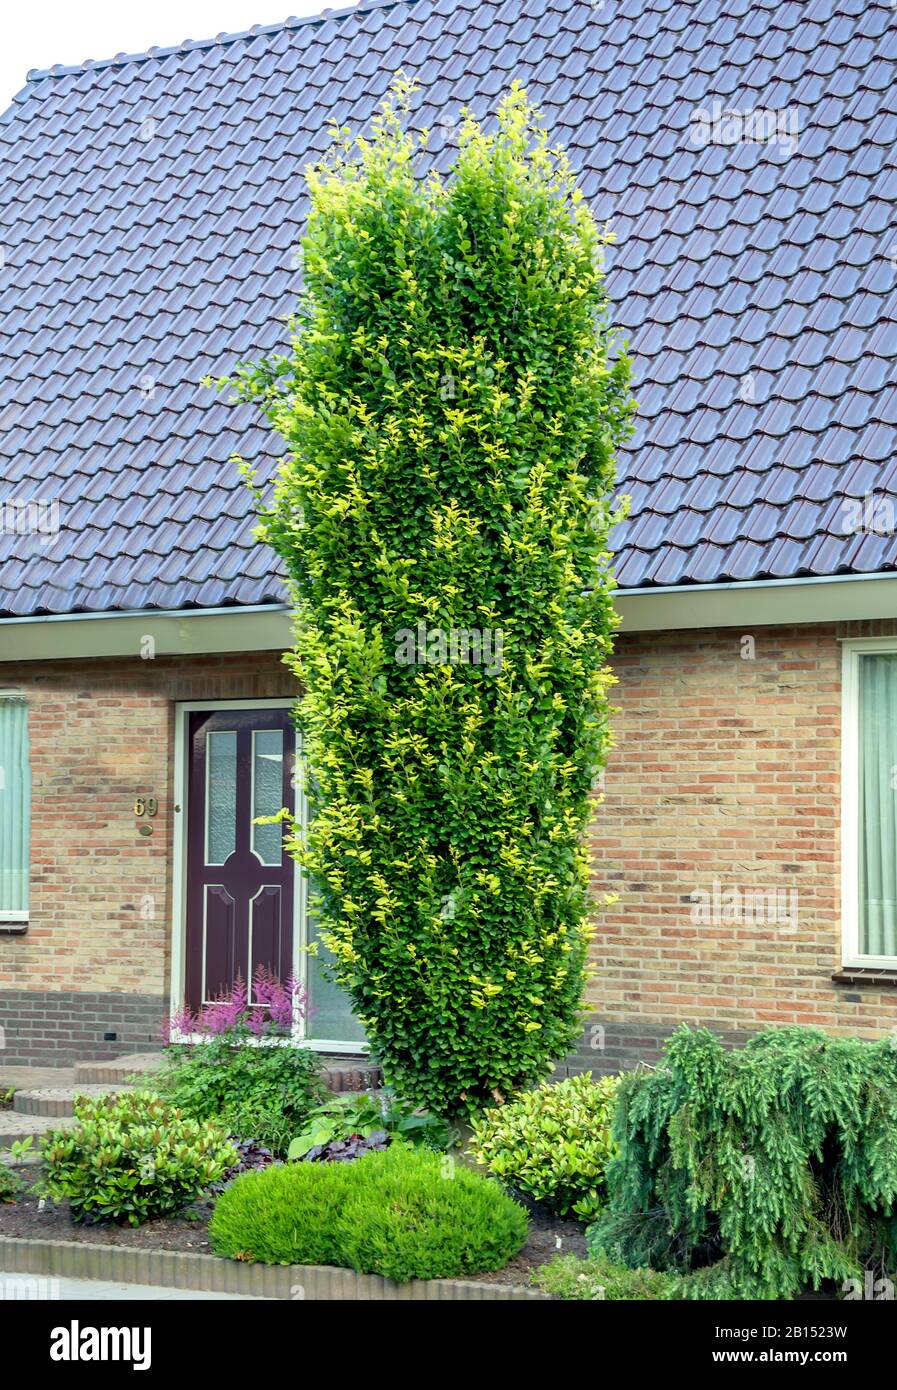 common beech (Fagus sylvatica 'Dawyck', Fagus sylvatica Dawyck), cultivar Dawyck, Netherlands Stock Photo